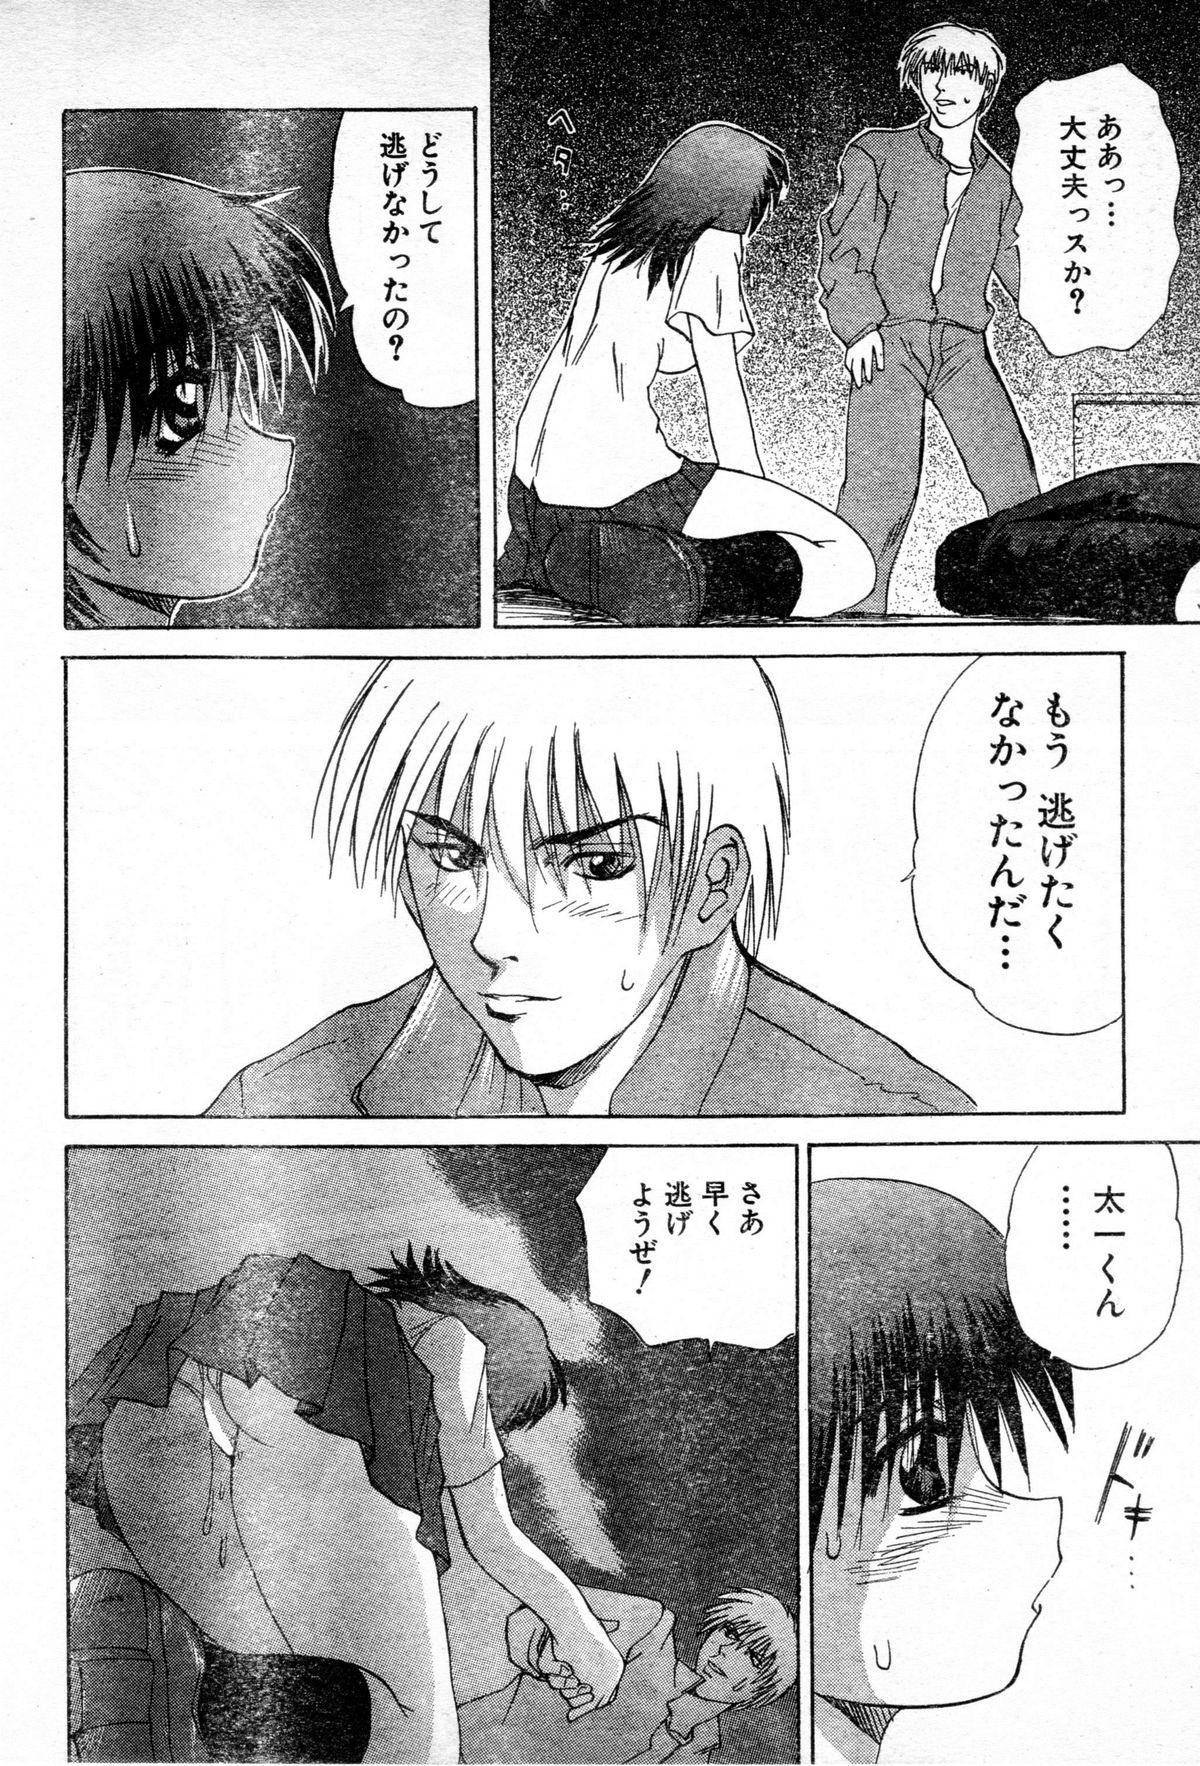 [Gekka Saeki] Gun Dancing page 18 full